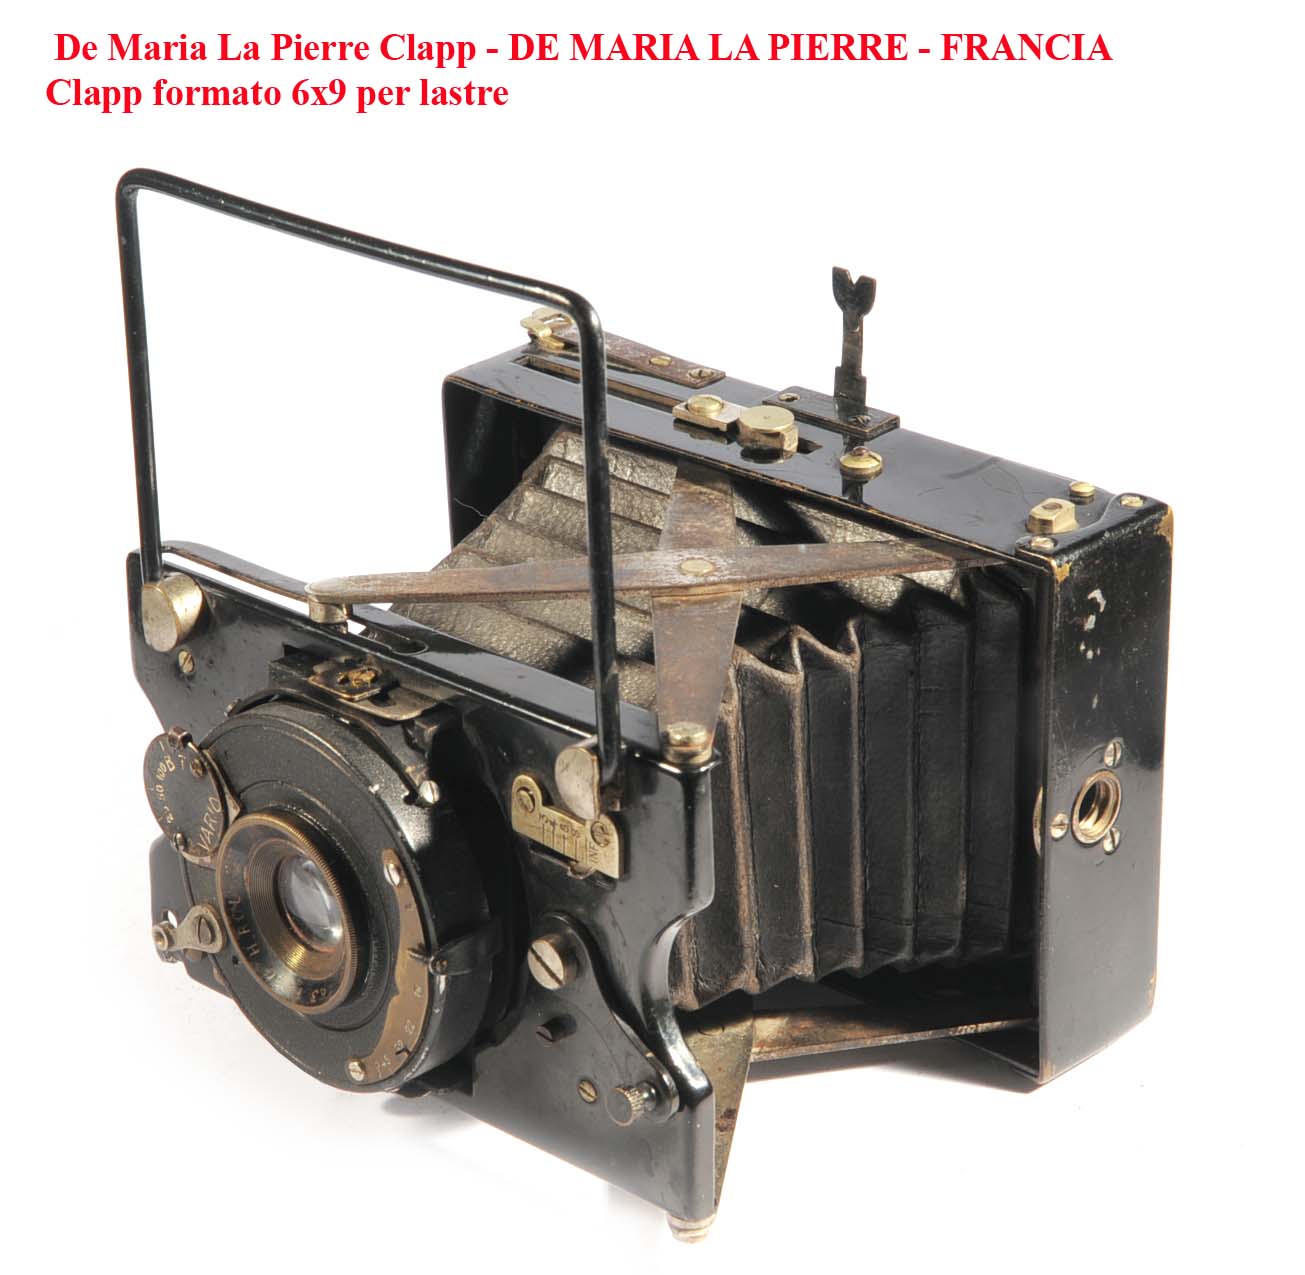 Clapp De Maria La Pierre - DE MARIA LA PIERRE - FRANCIA